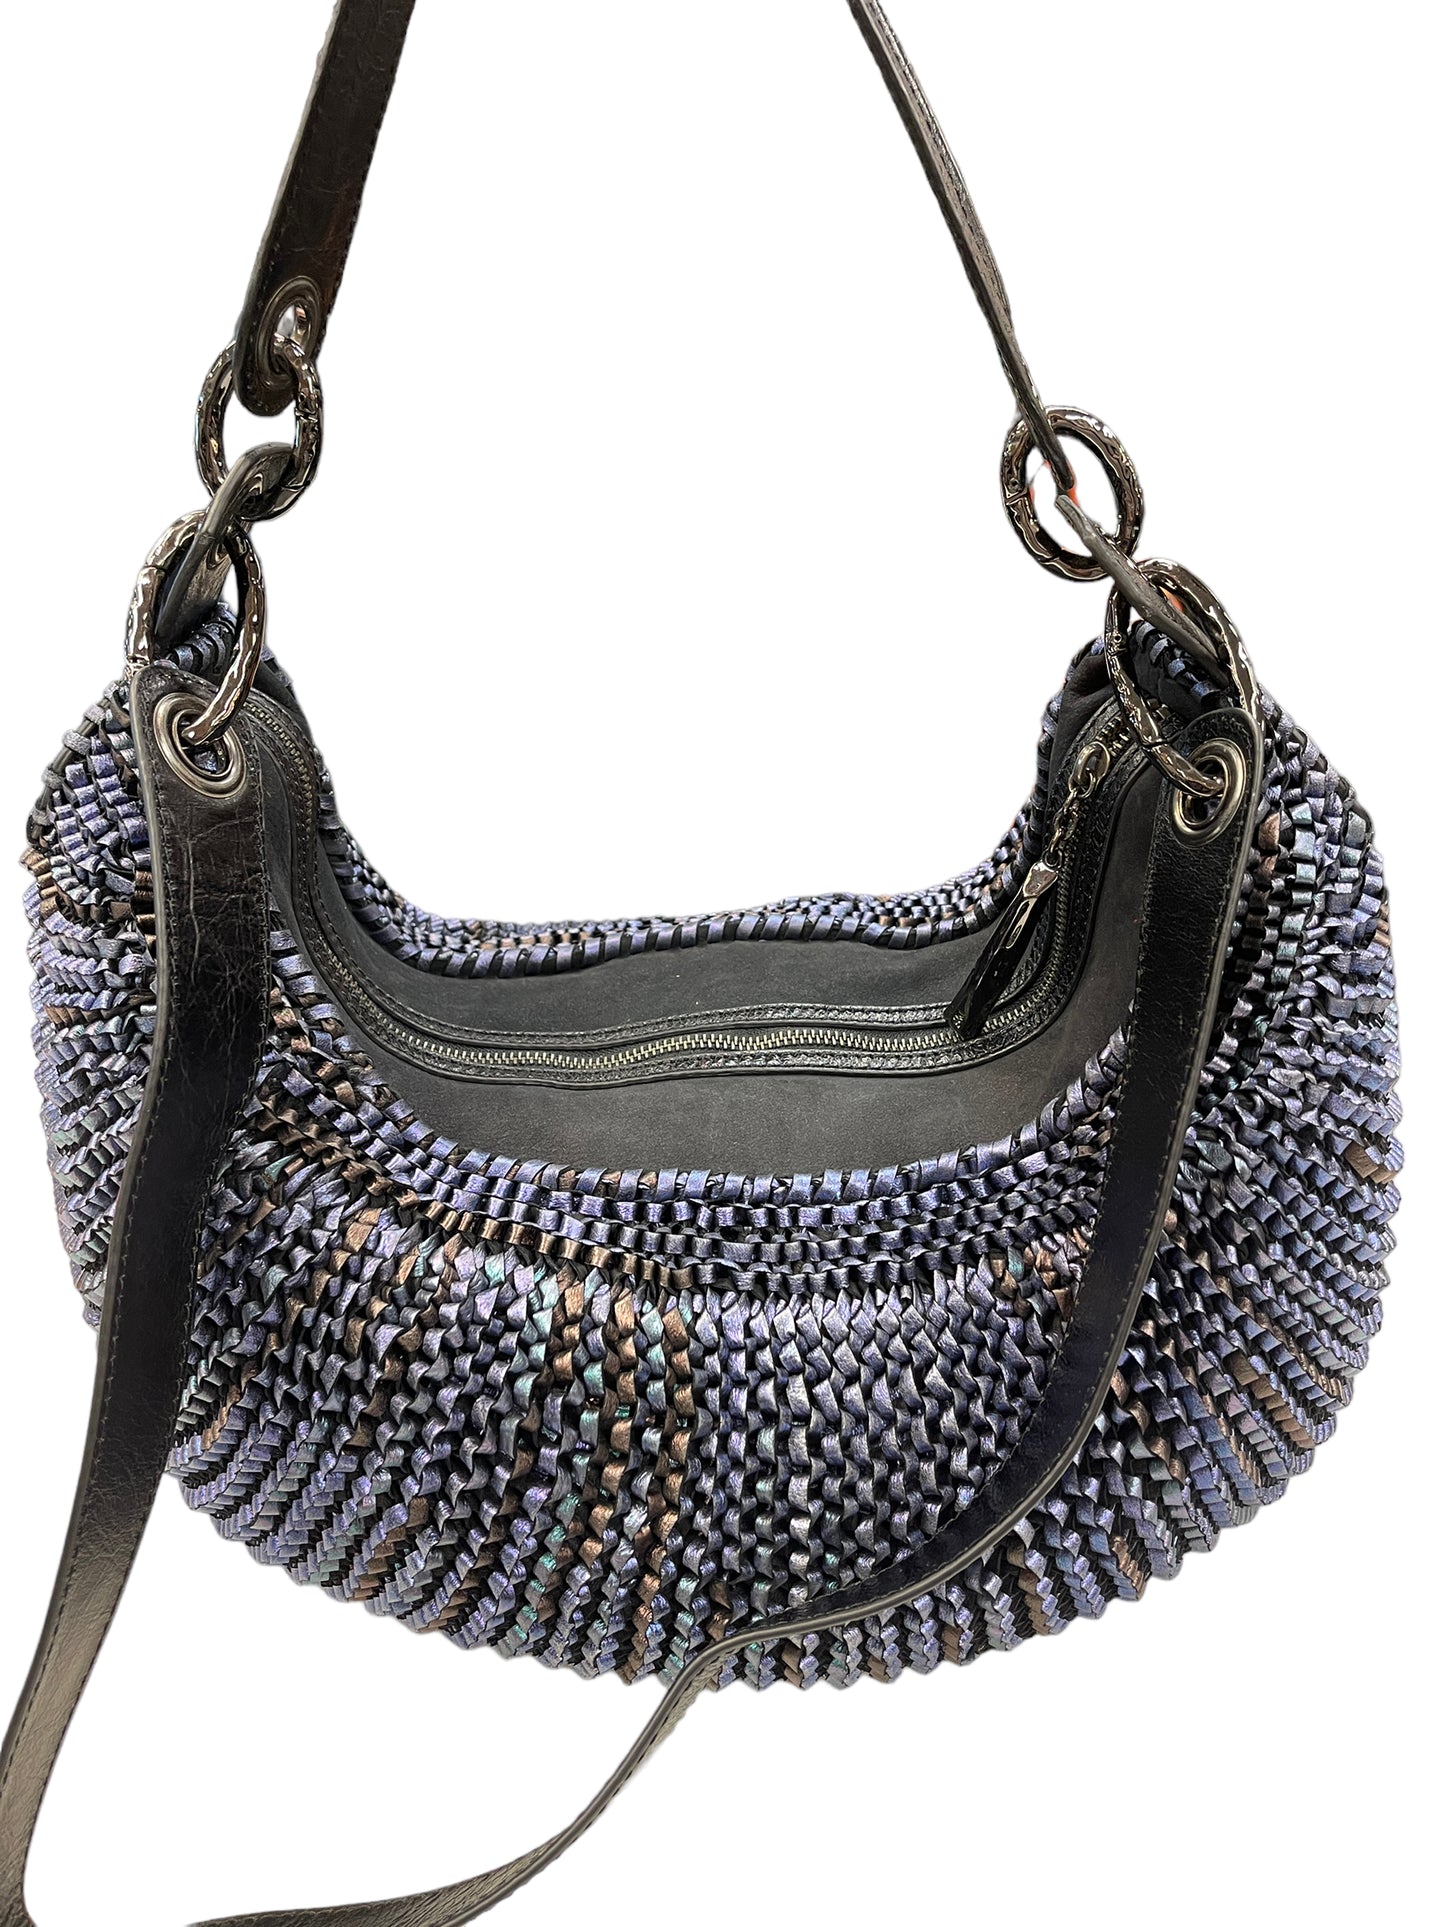 Handbag Designer By Diane Von Furstenberg  Size: Large